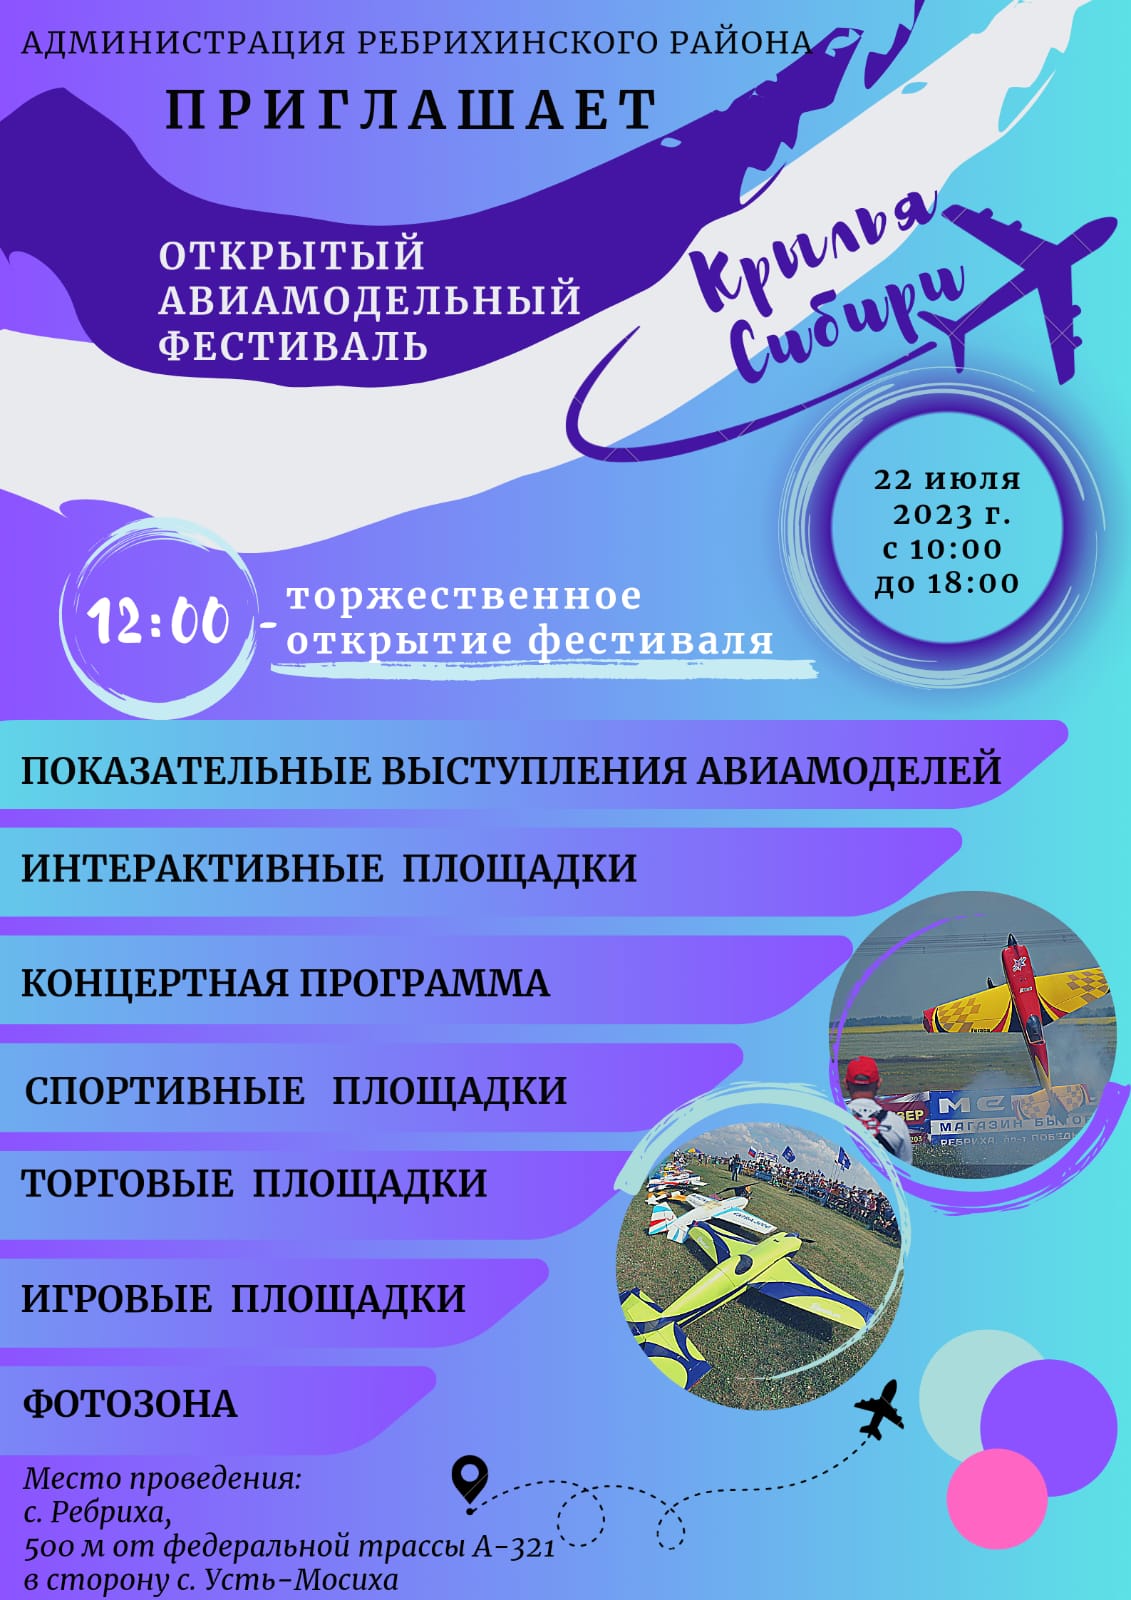 Администрация Ребрихинского района приглашает на открытый авиамодельный фестиваль КРЫЛЬЯ СИБИРИ.